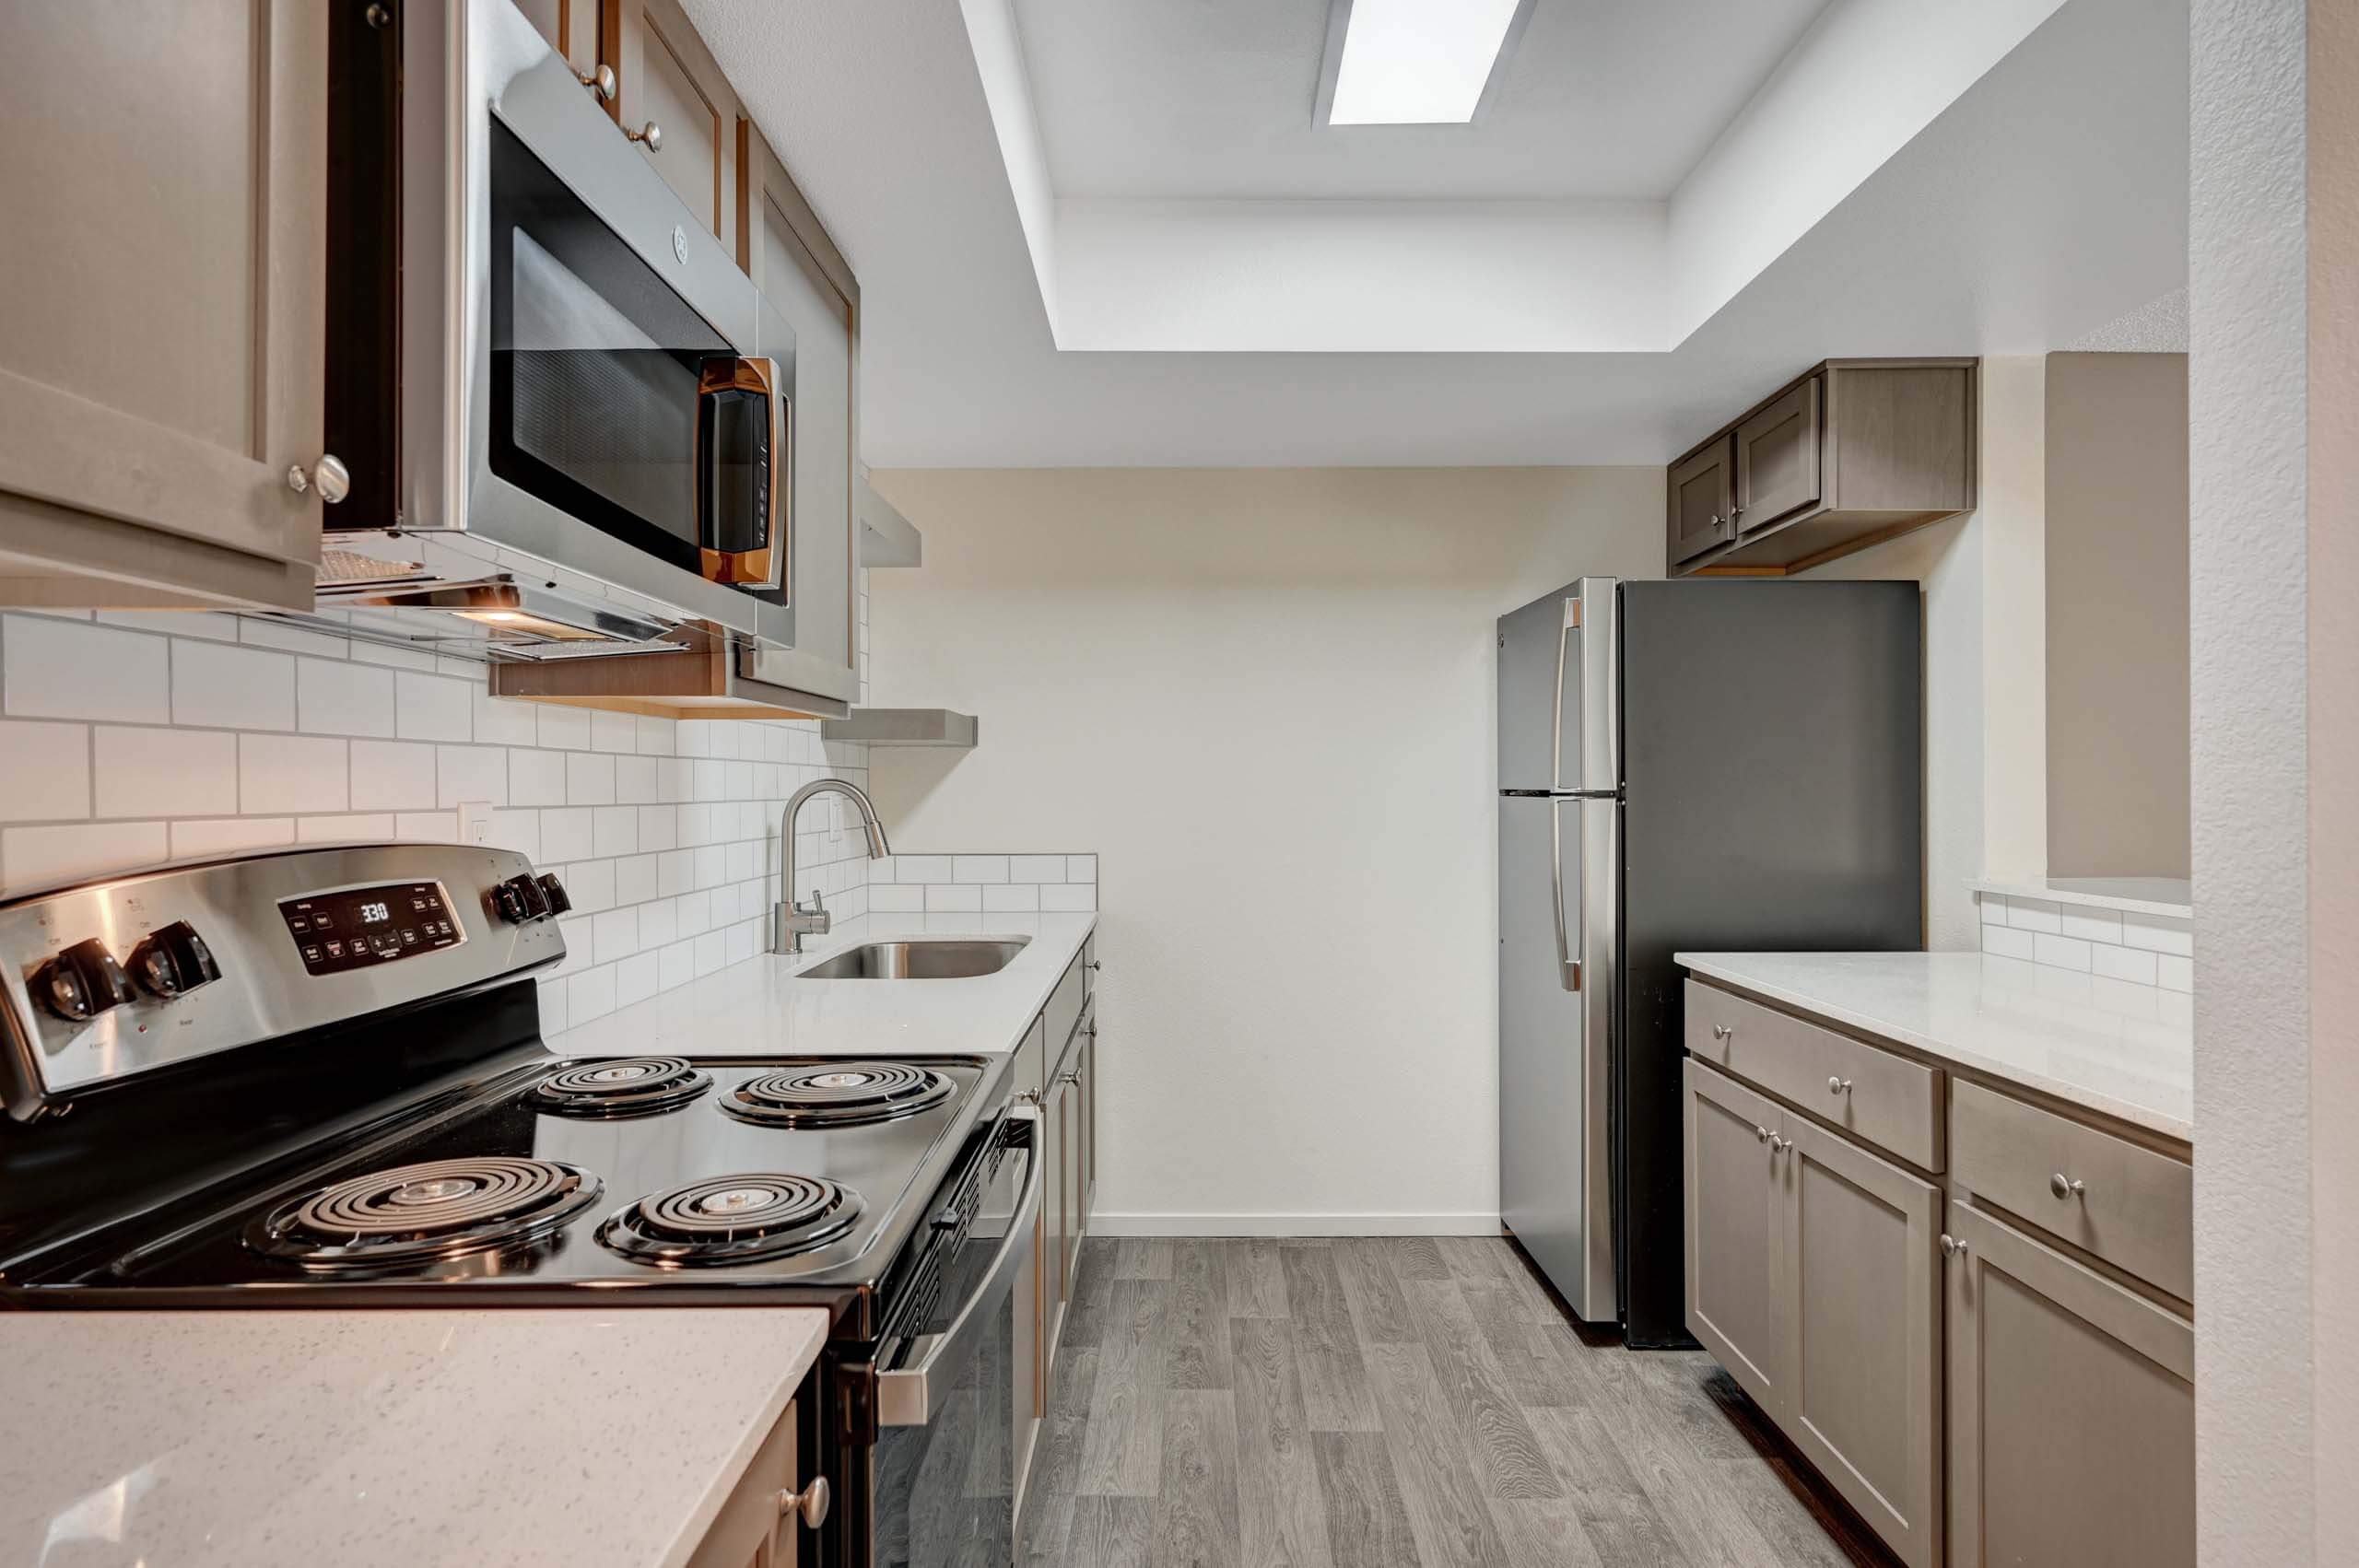 Solstice studio apartment interior - kitchen